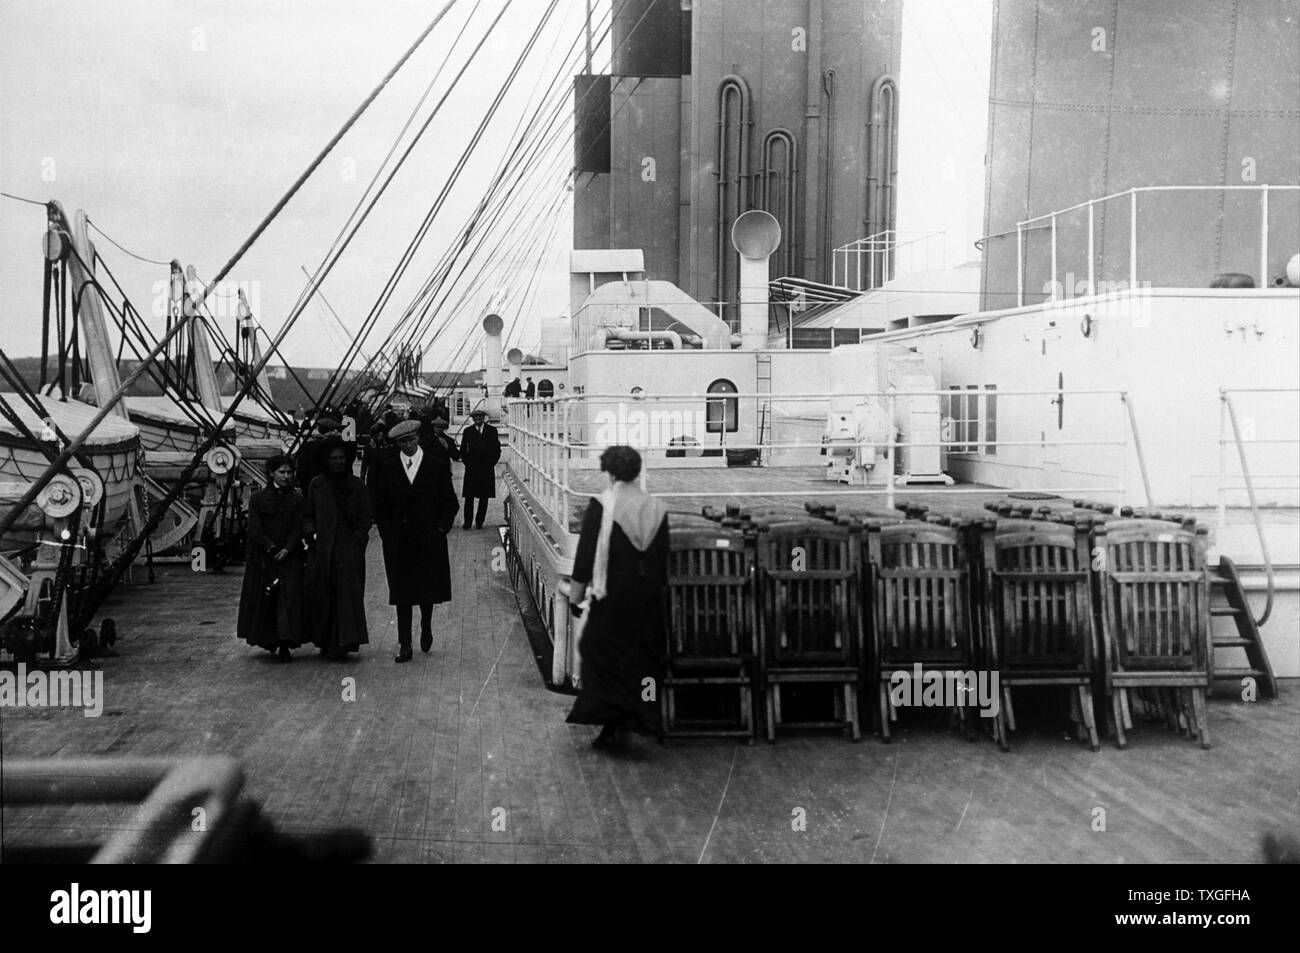 Les passagers à pied sur le pont du SS Titanic 1912 Banque D'Images